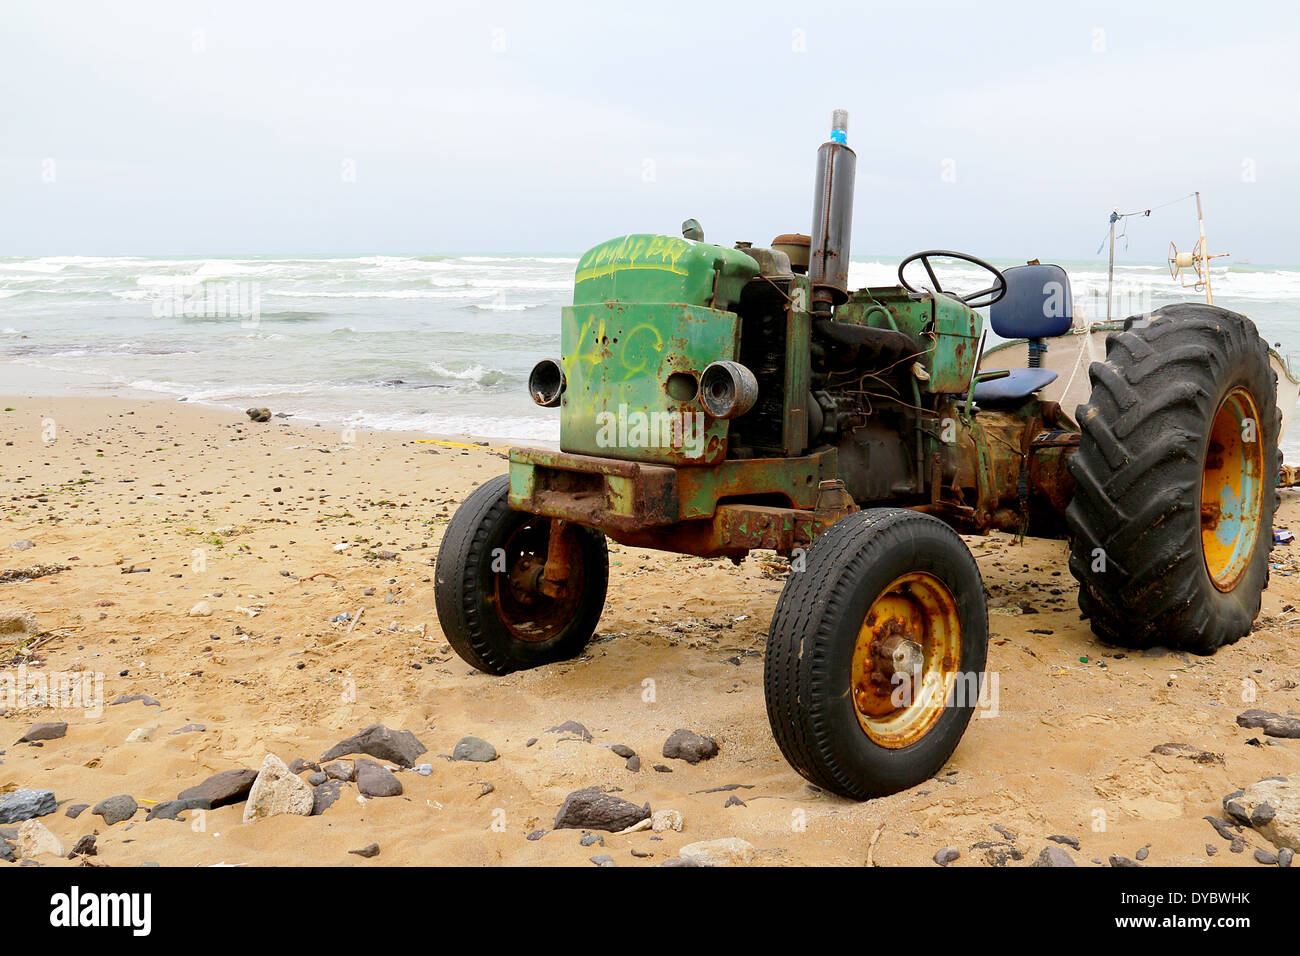 L'image d'un tracteur rouillé sur la plage Banque D'Images